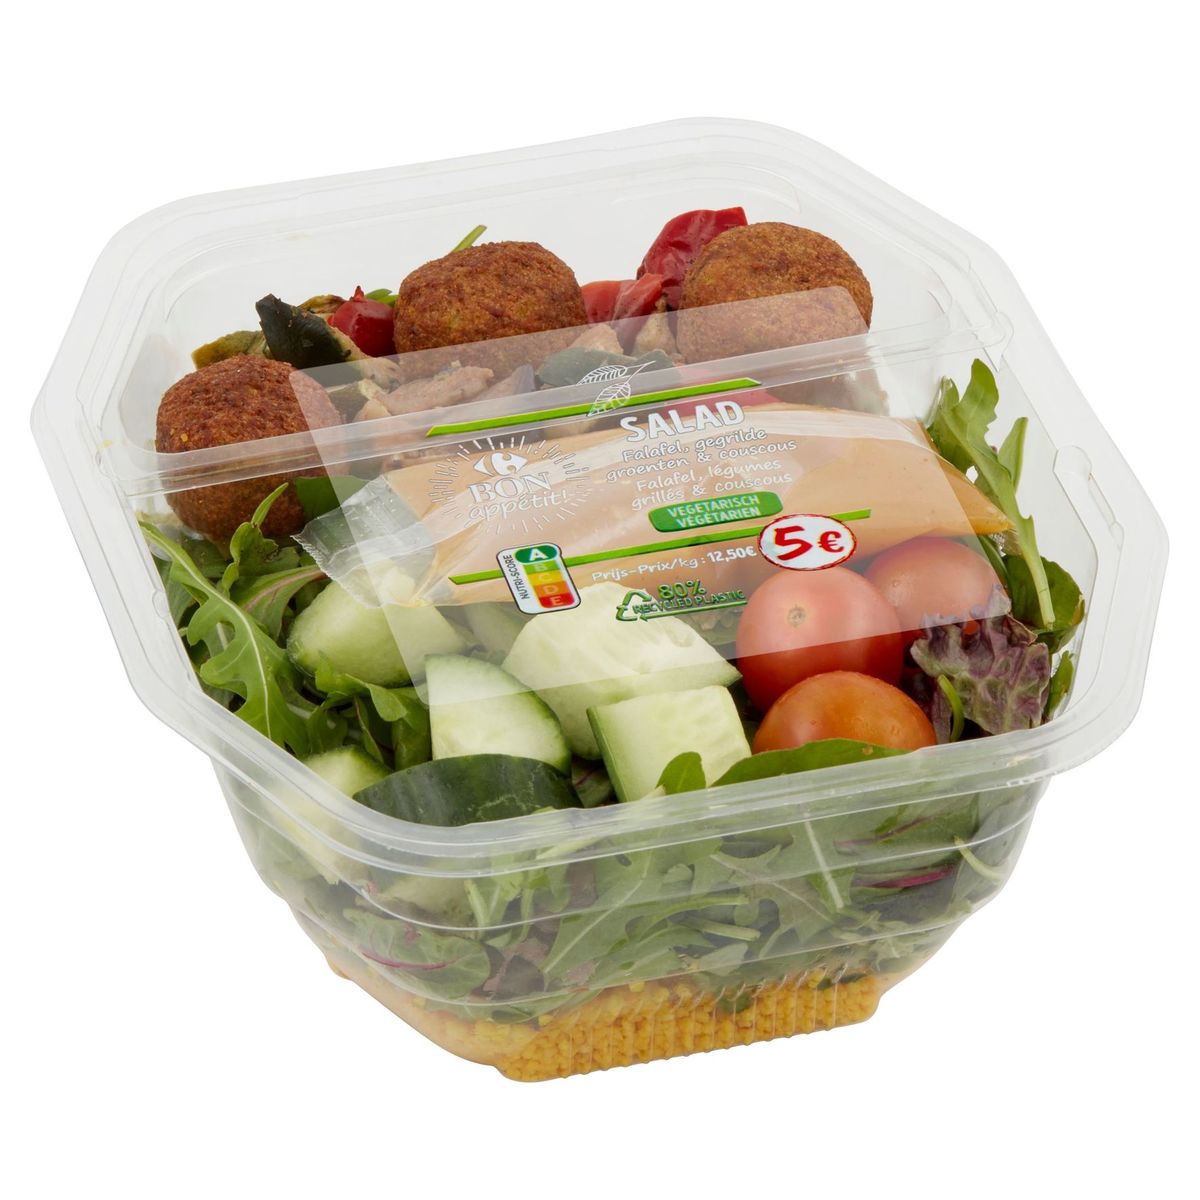 Carrefour Bon Appétit! Salad Falafel, Légumes Grillés & Couscous 400 g